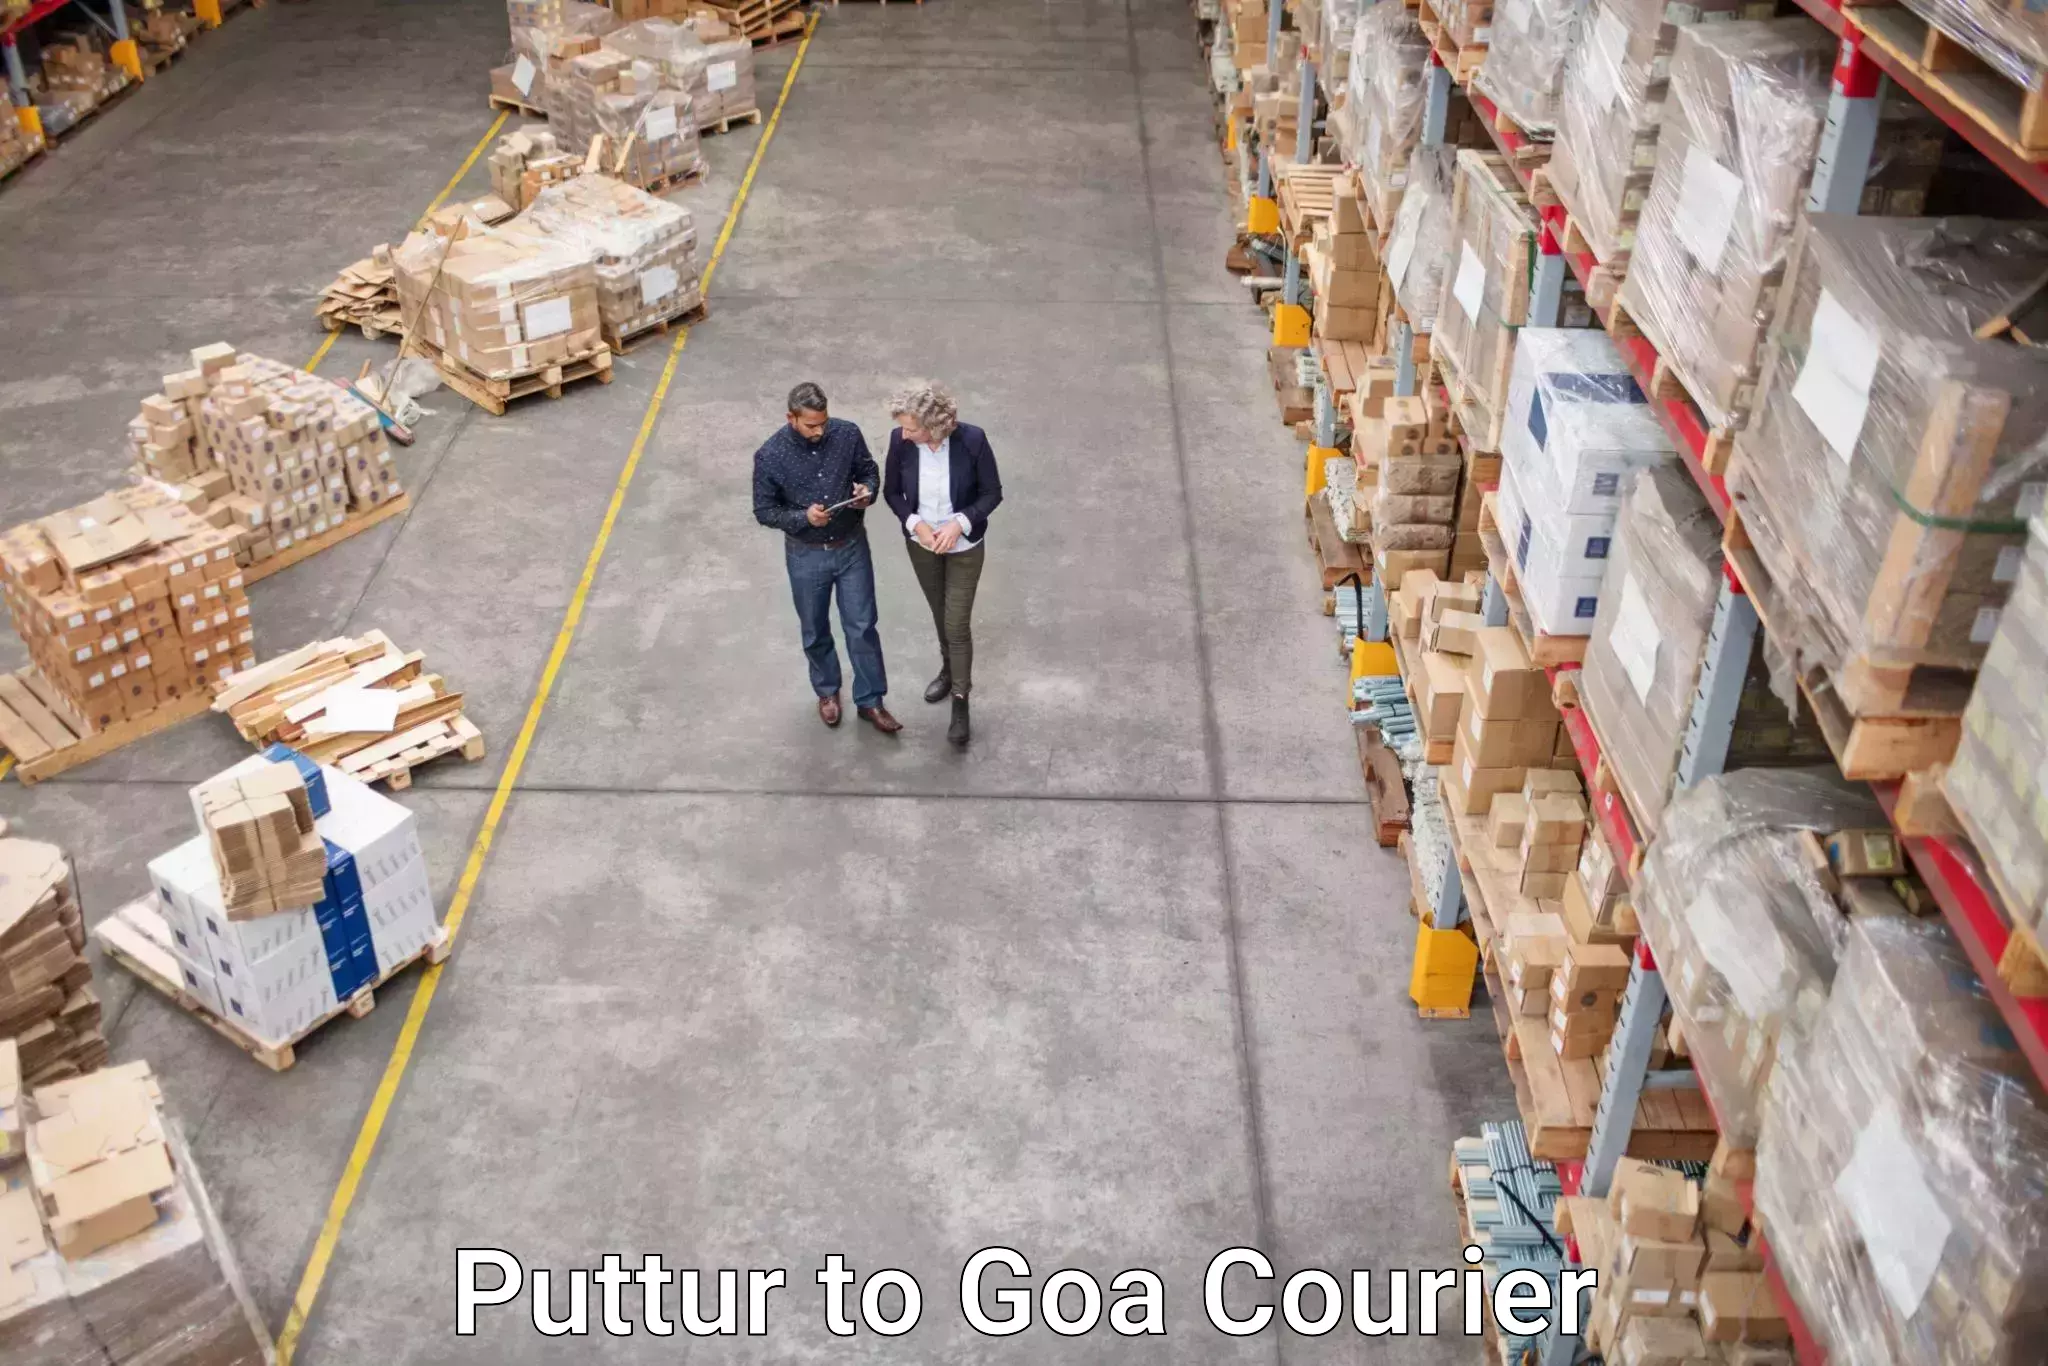 Punctual parcel services Puttur to Goa